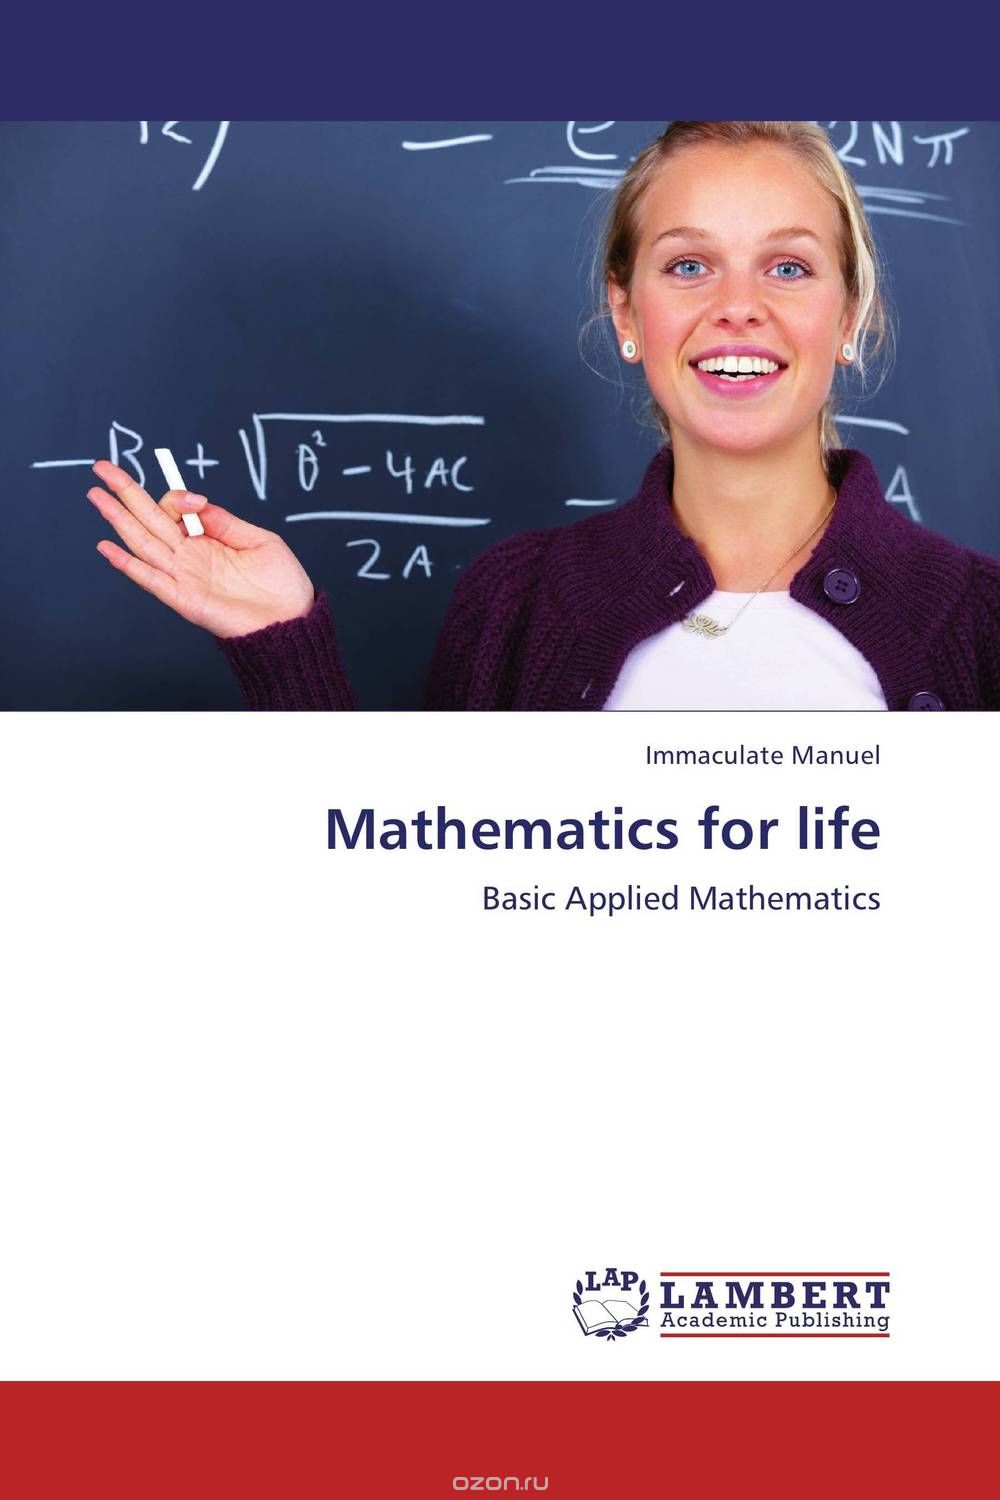 Скачать книгу "Mathematics for life"